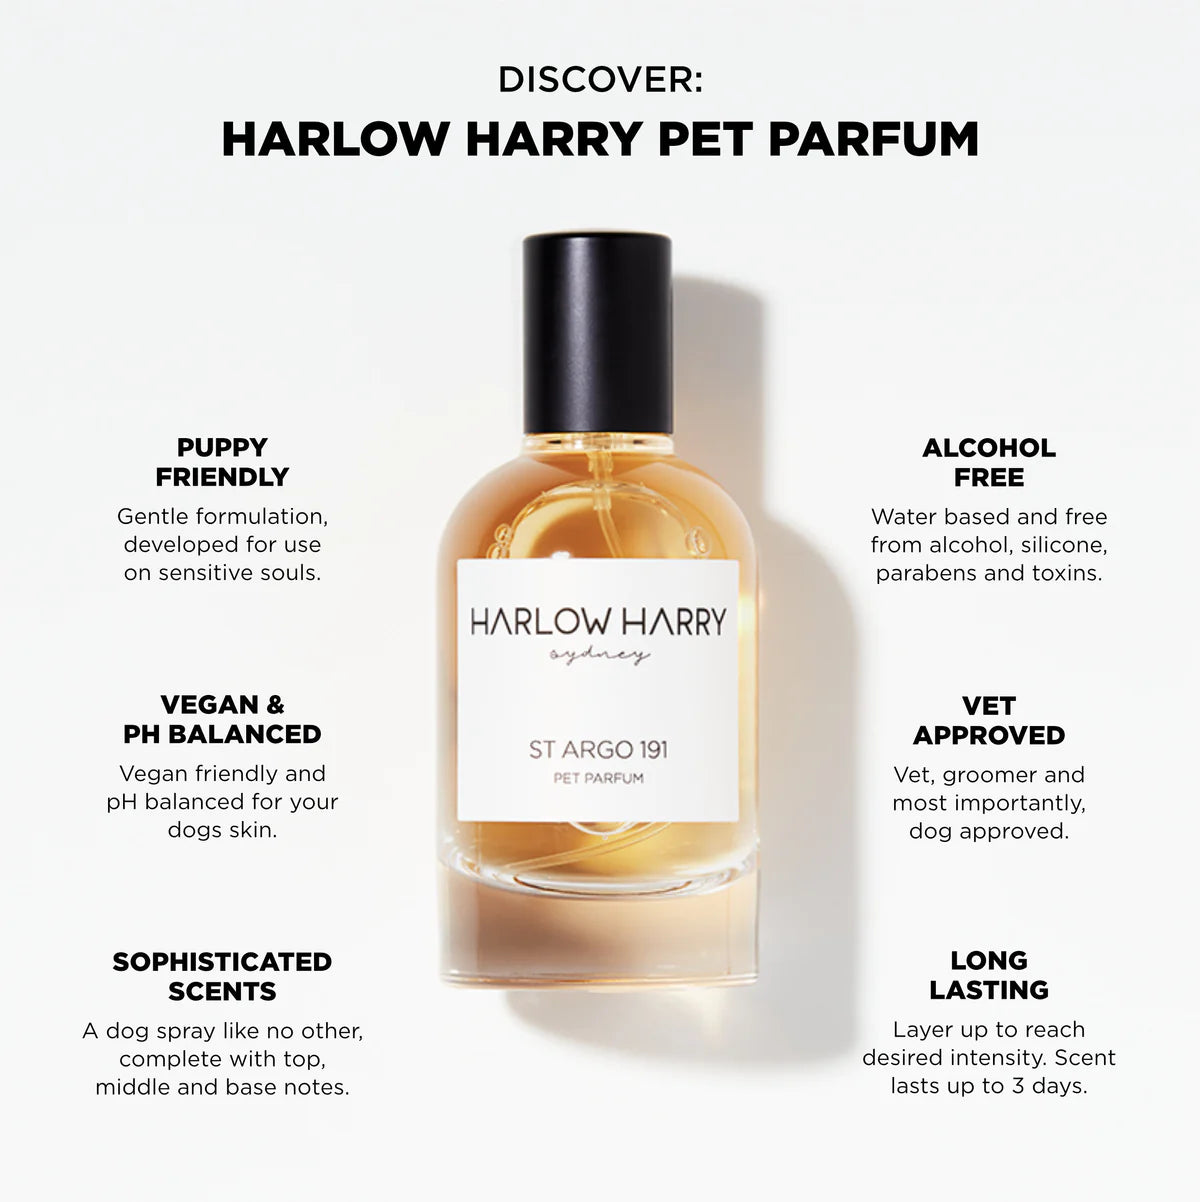 Pet Parfum | St Argo 191